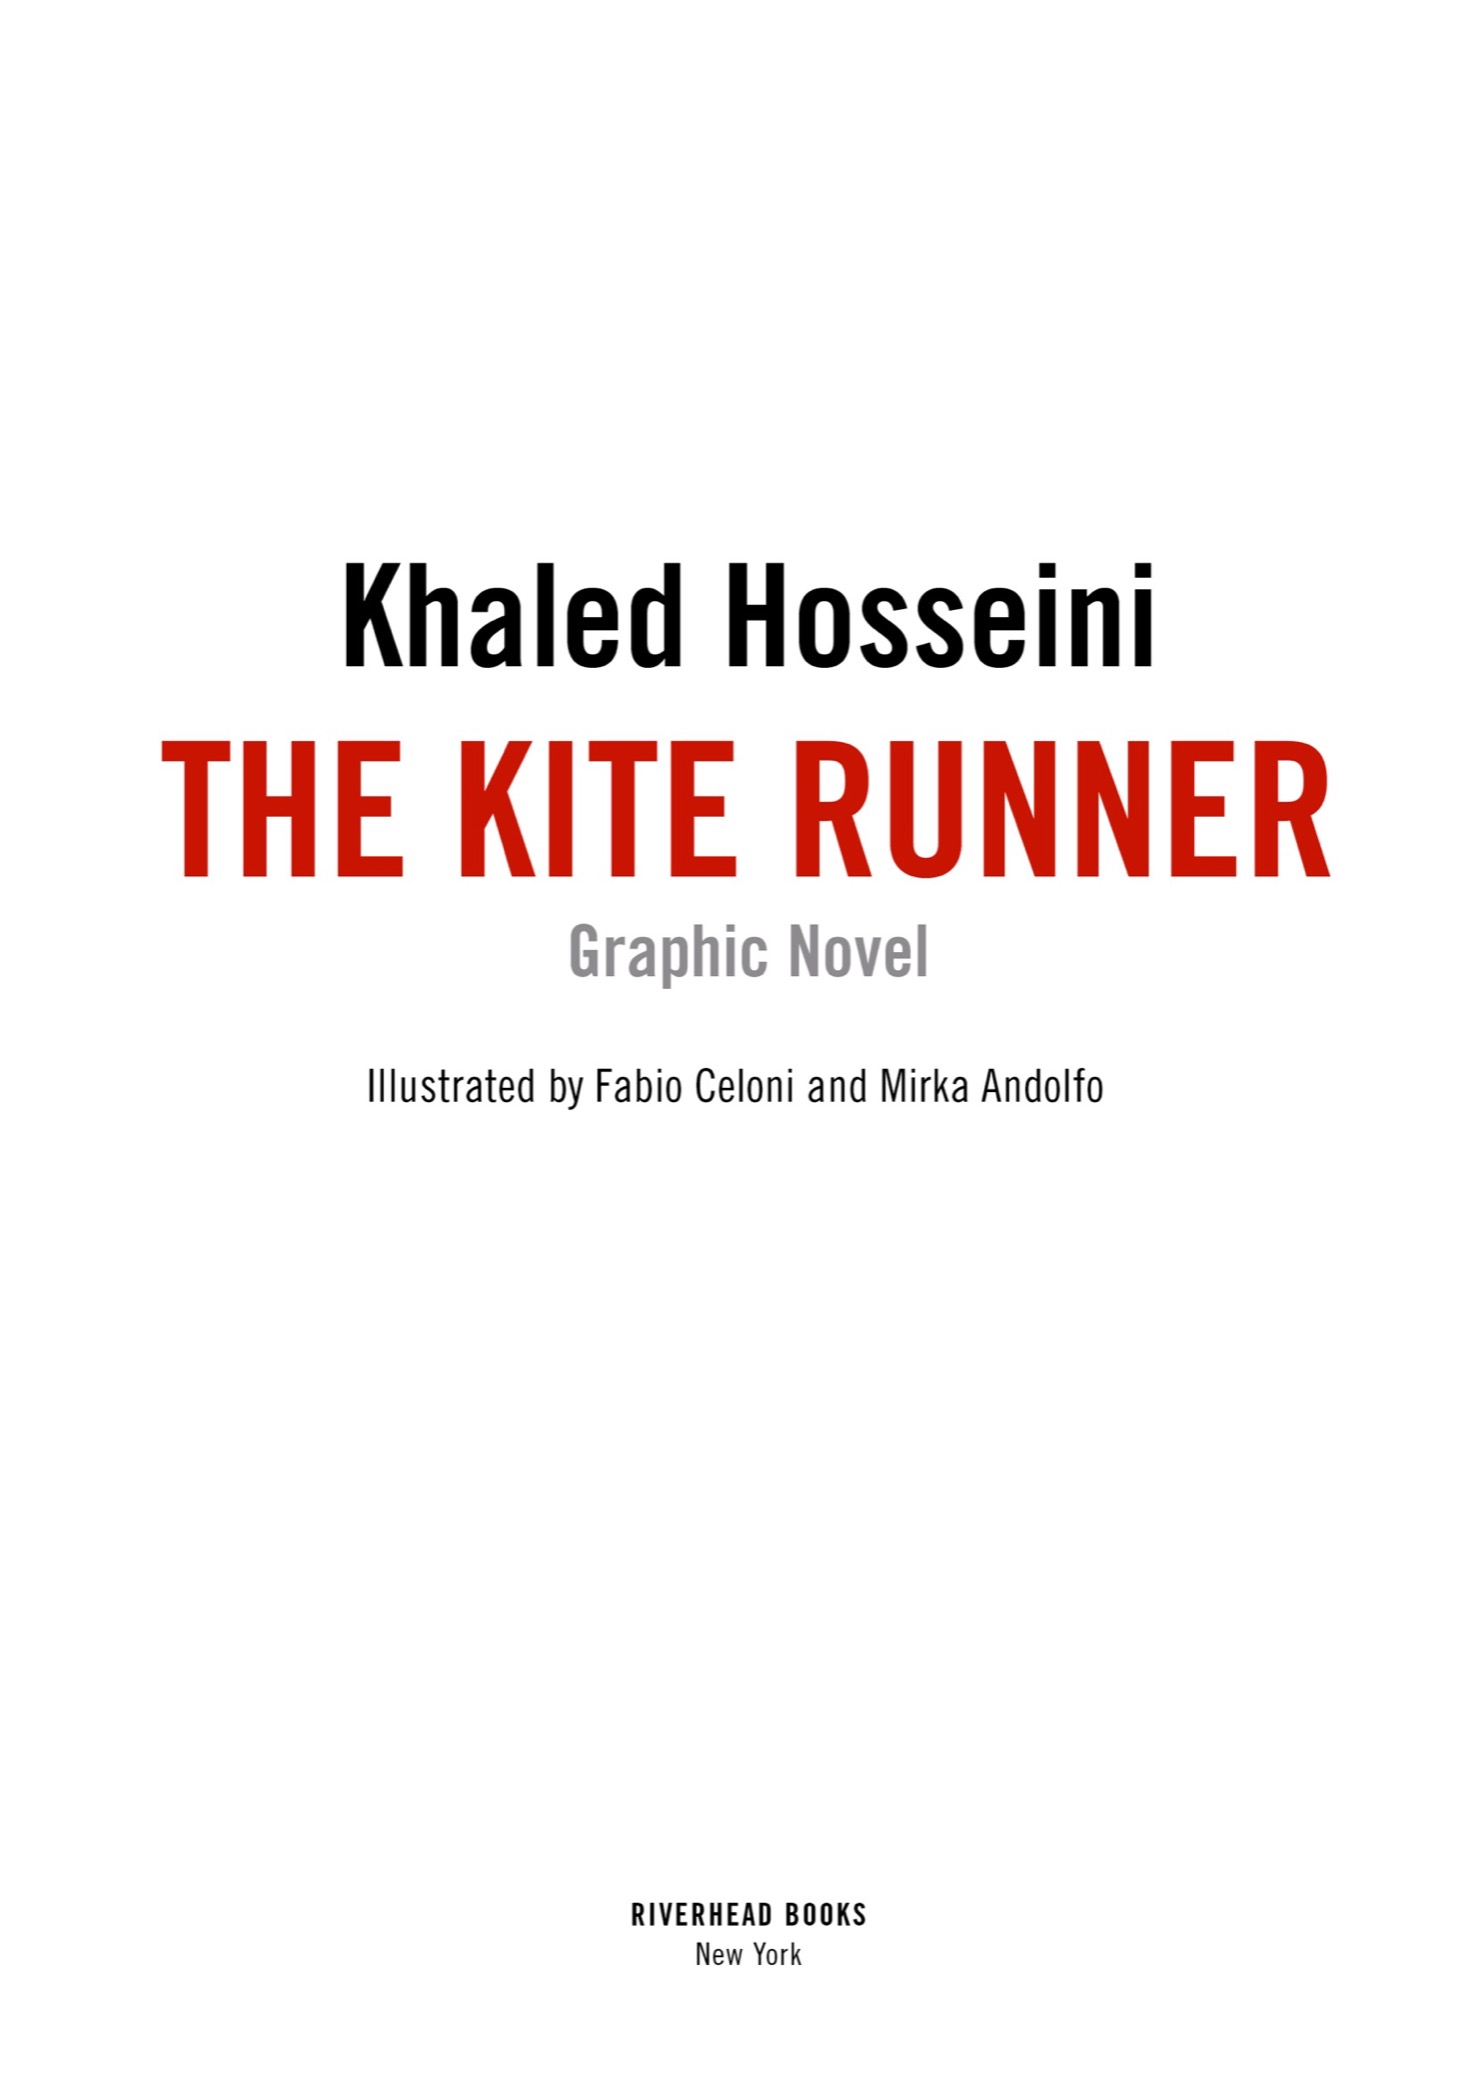 Read online The Kite Runner comic -  Issue # TPB - 4